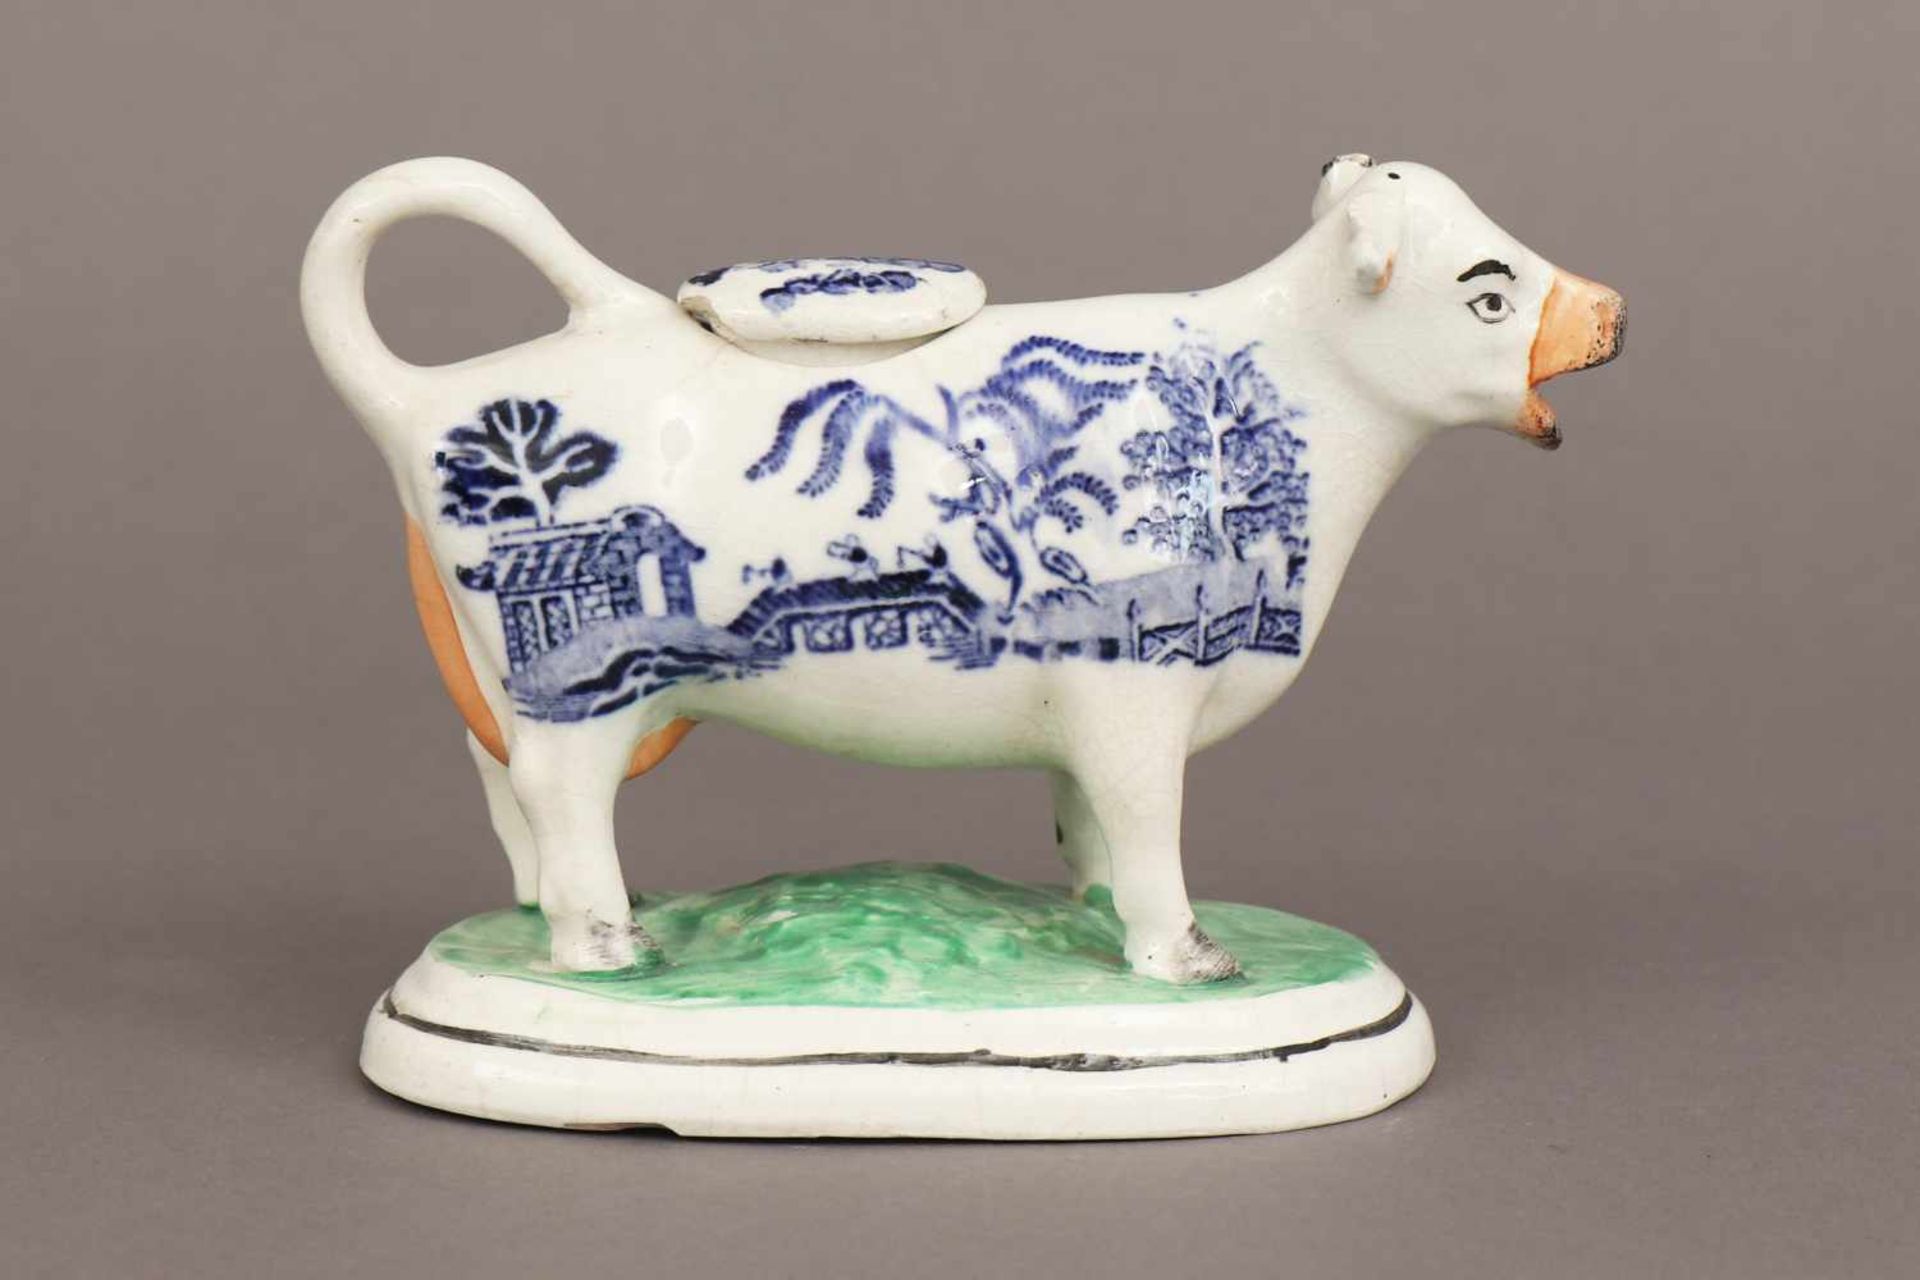 STAFFORDSHIRE Keramik ¨Cream Cow¨farbig staffiert, England, 19. Jhdt., Durchbruchdekor, ovaler - Image 2 of 4